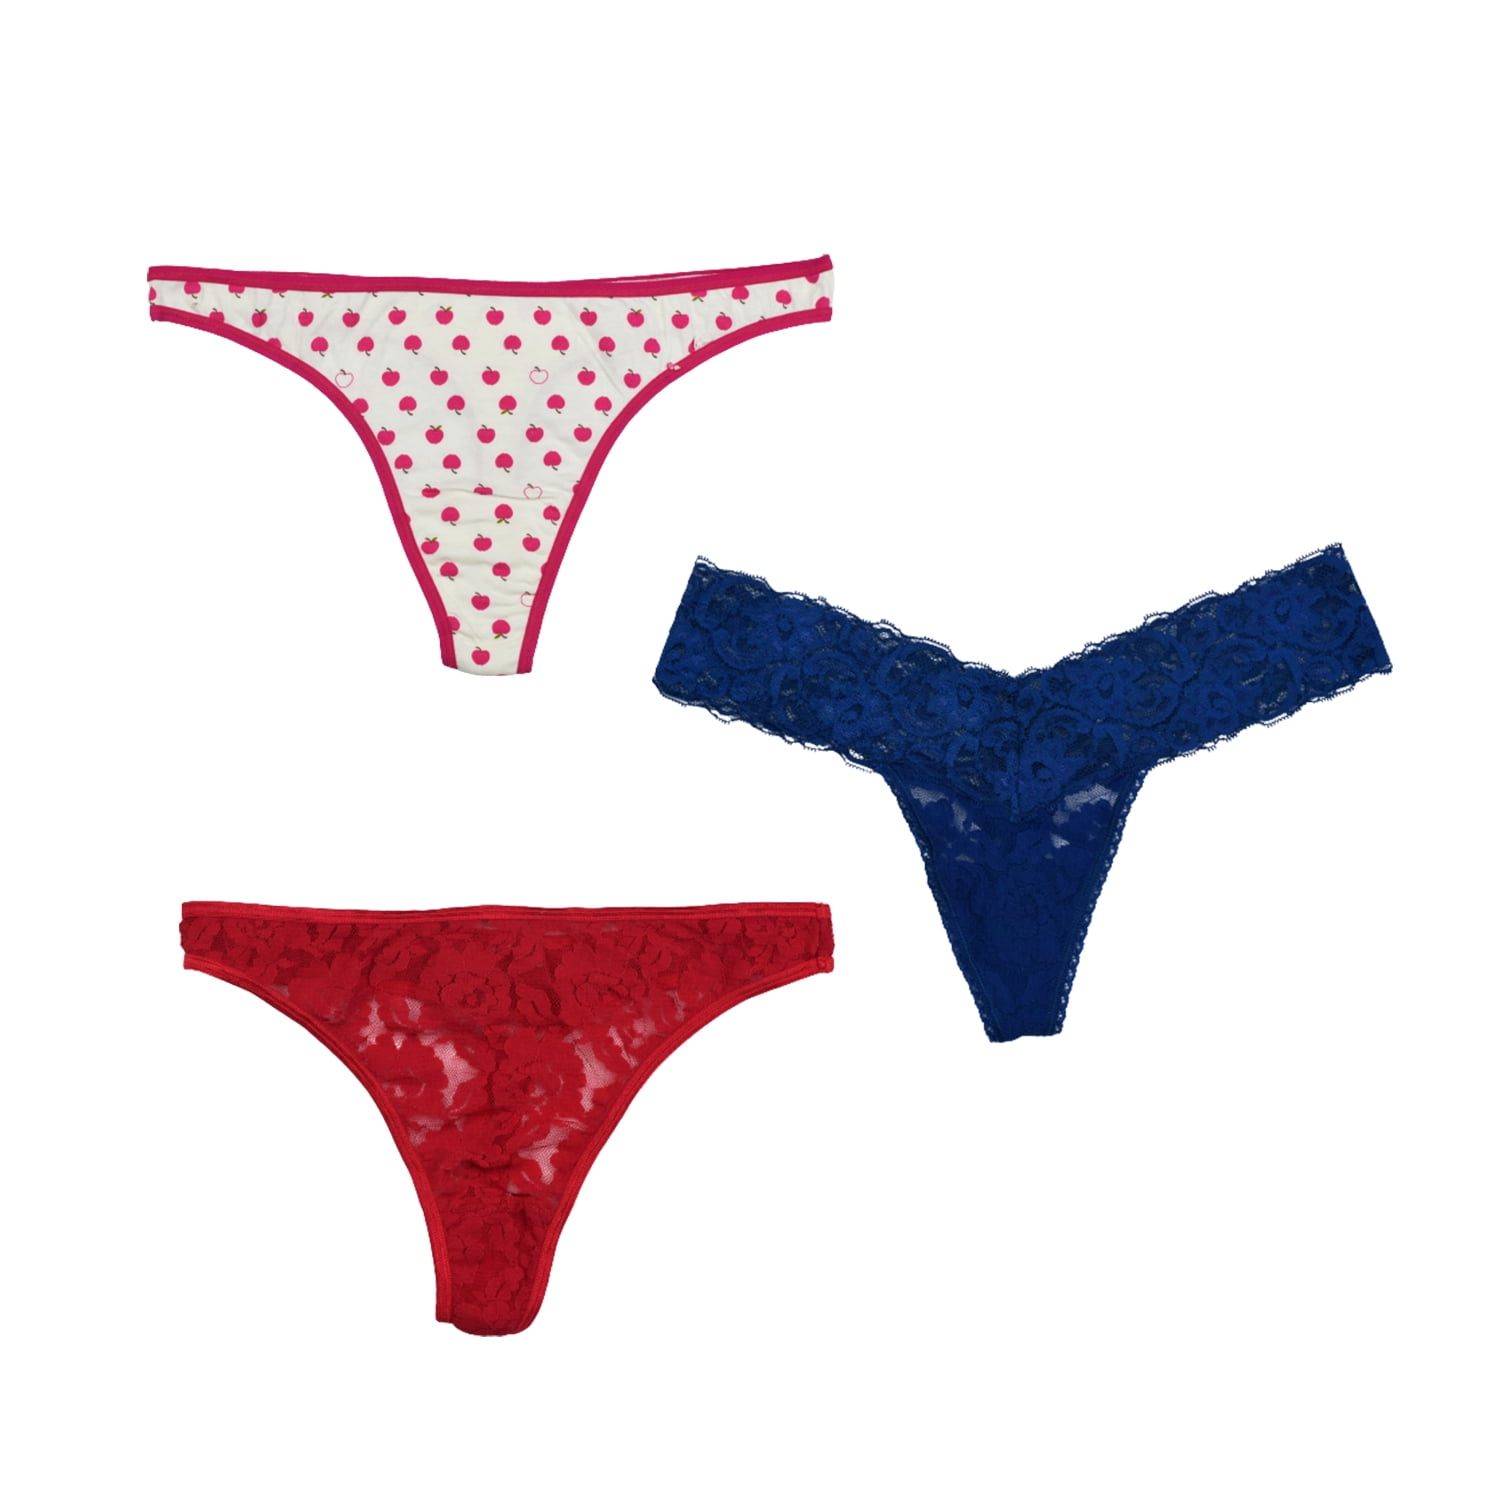 Women's Lace Open Crotch Thongs G-string Bikini Lingerie Underwear Bra Set FL 